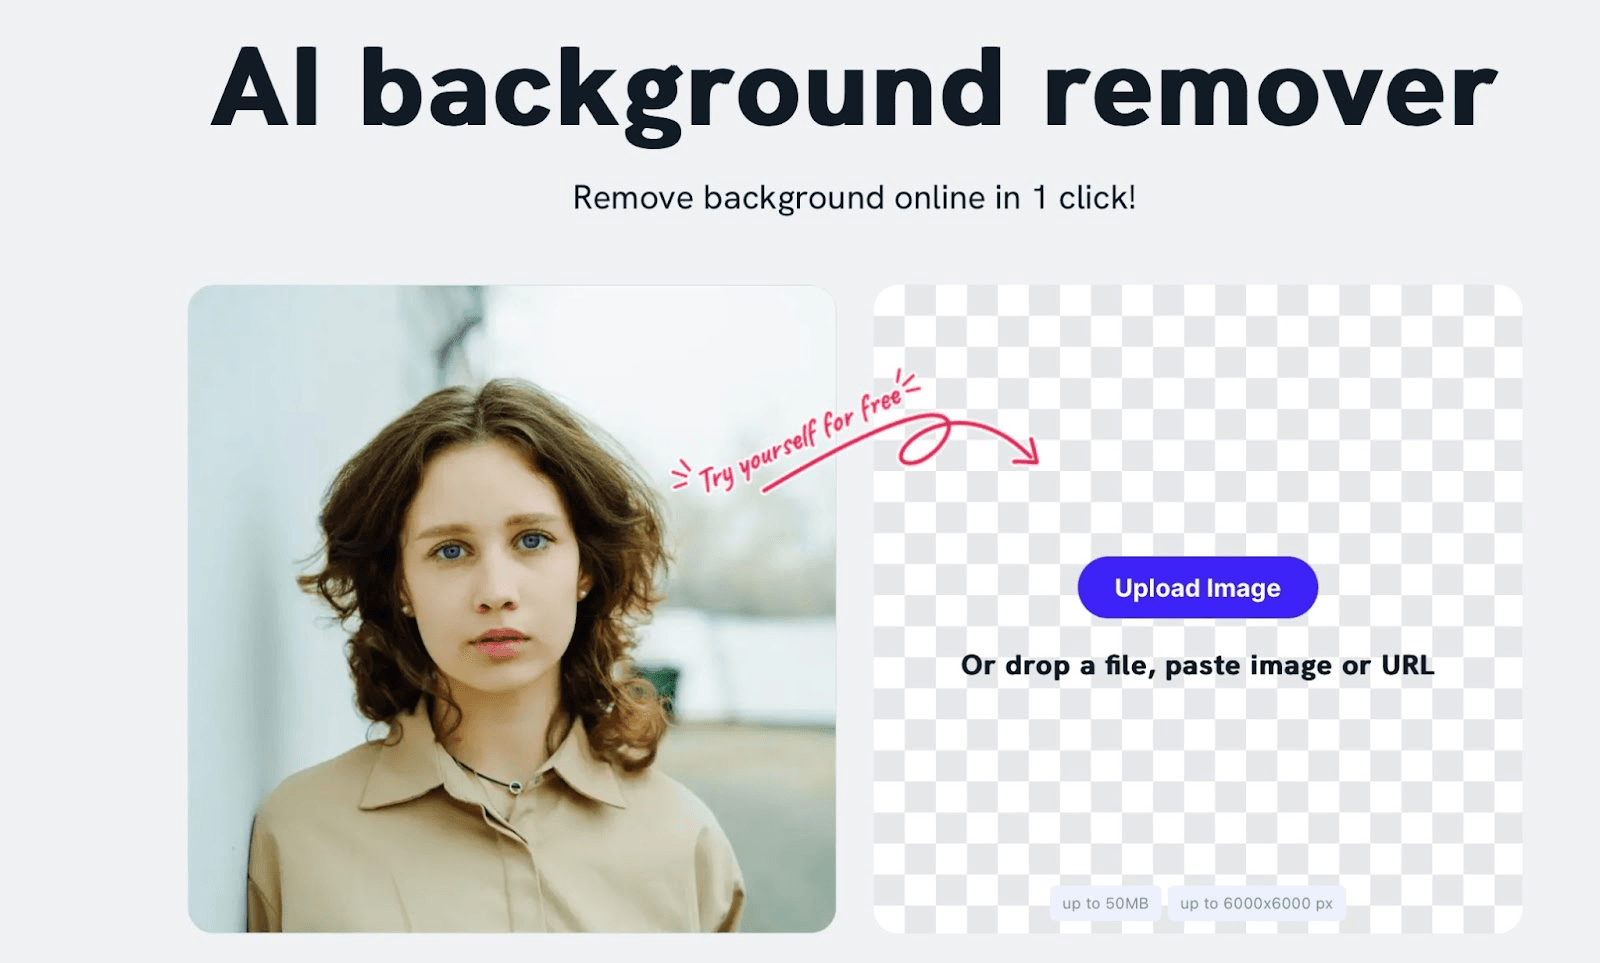 remover.jpg